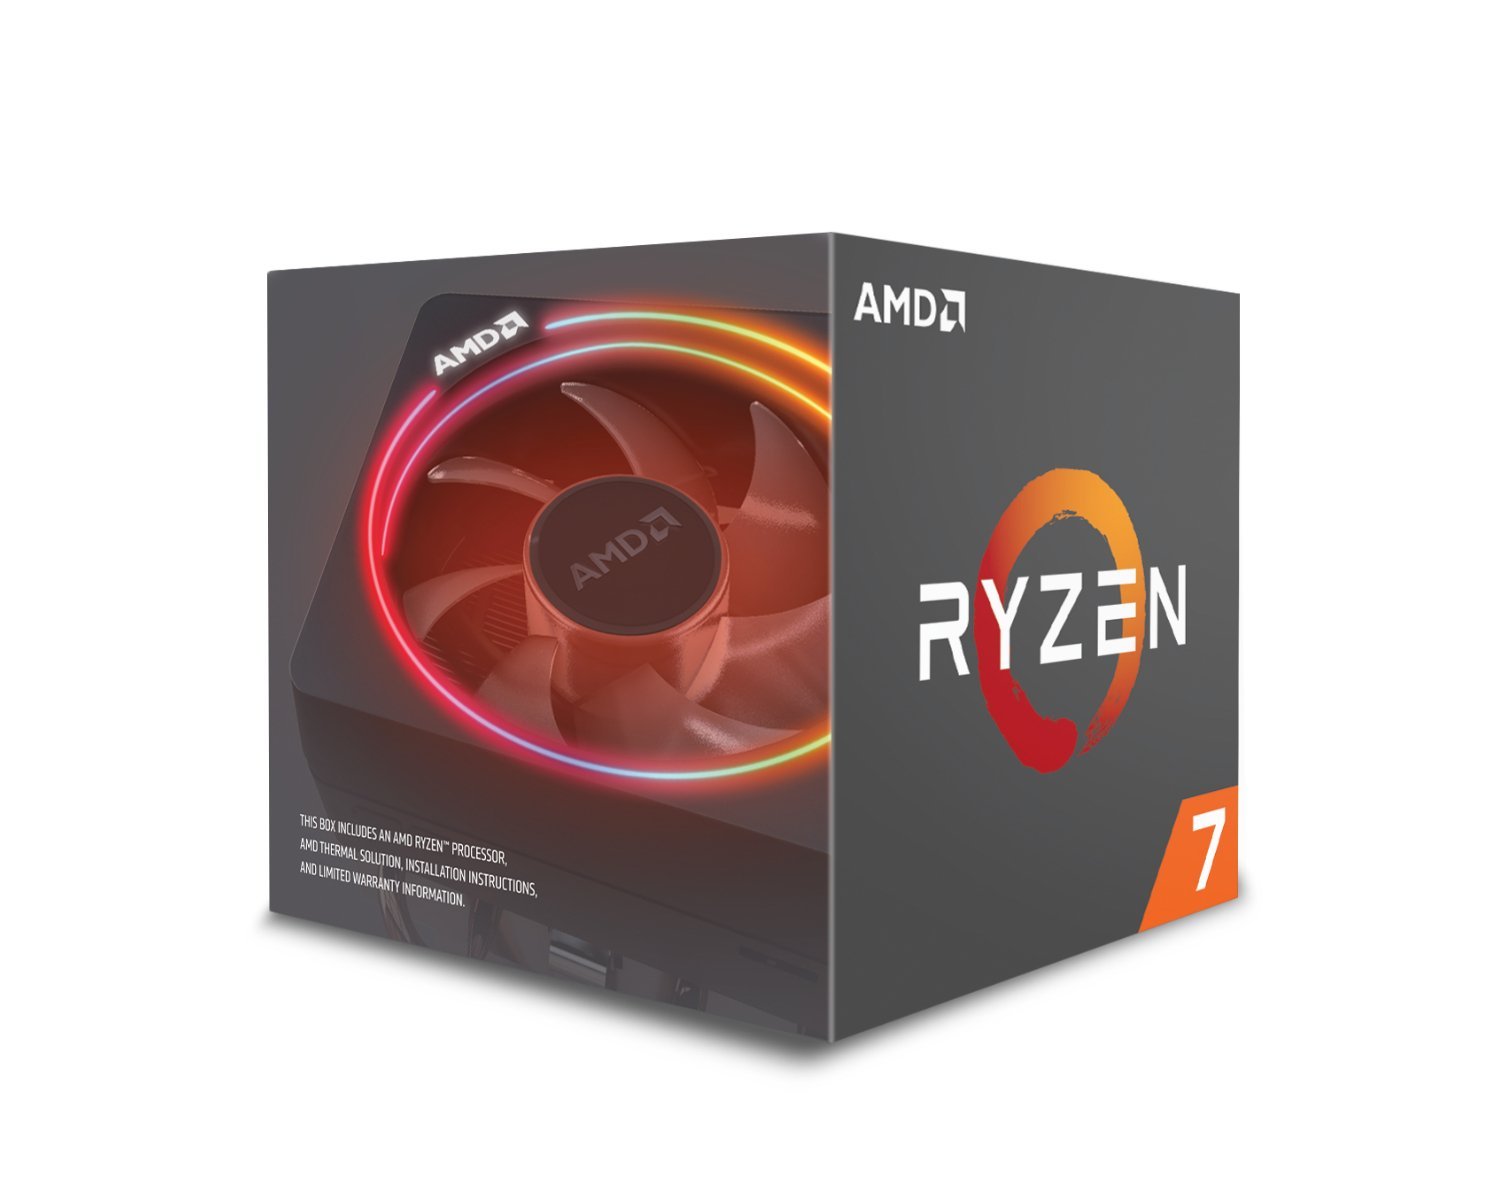 4. AMD Ryzen 7